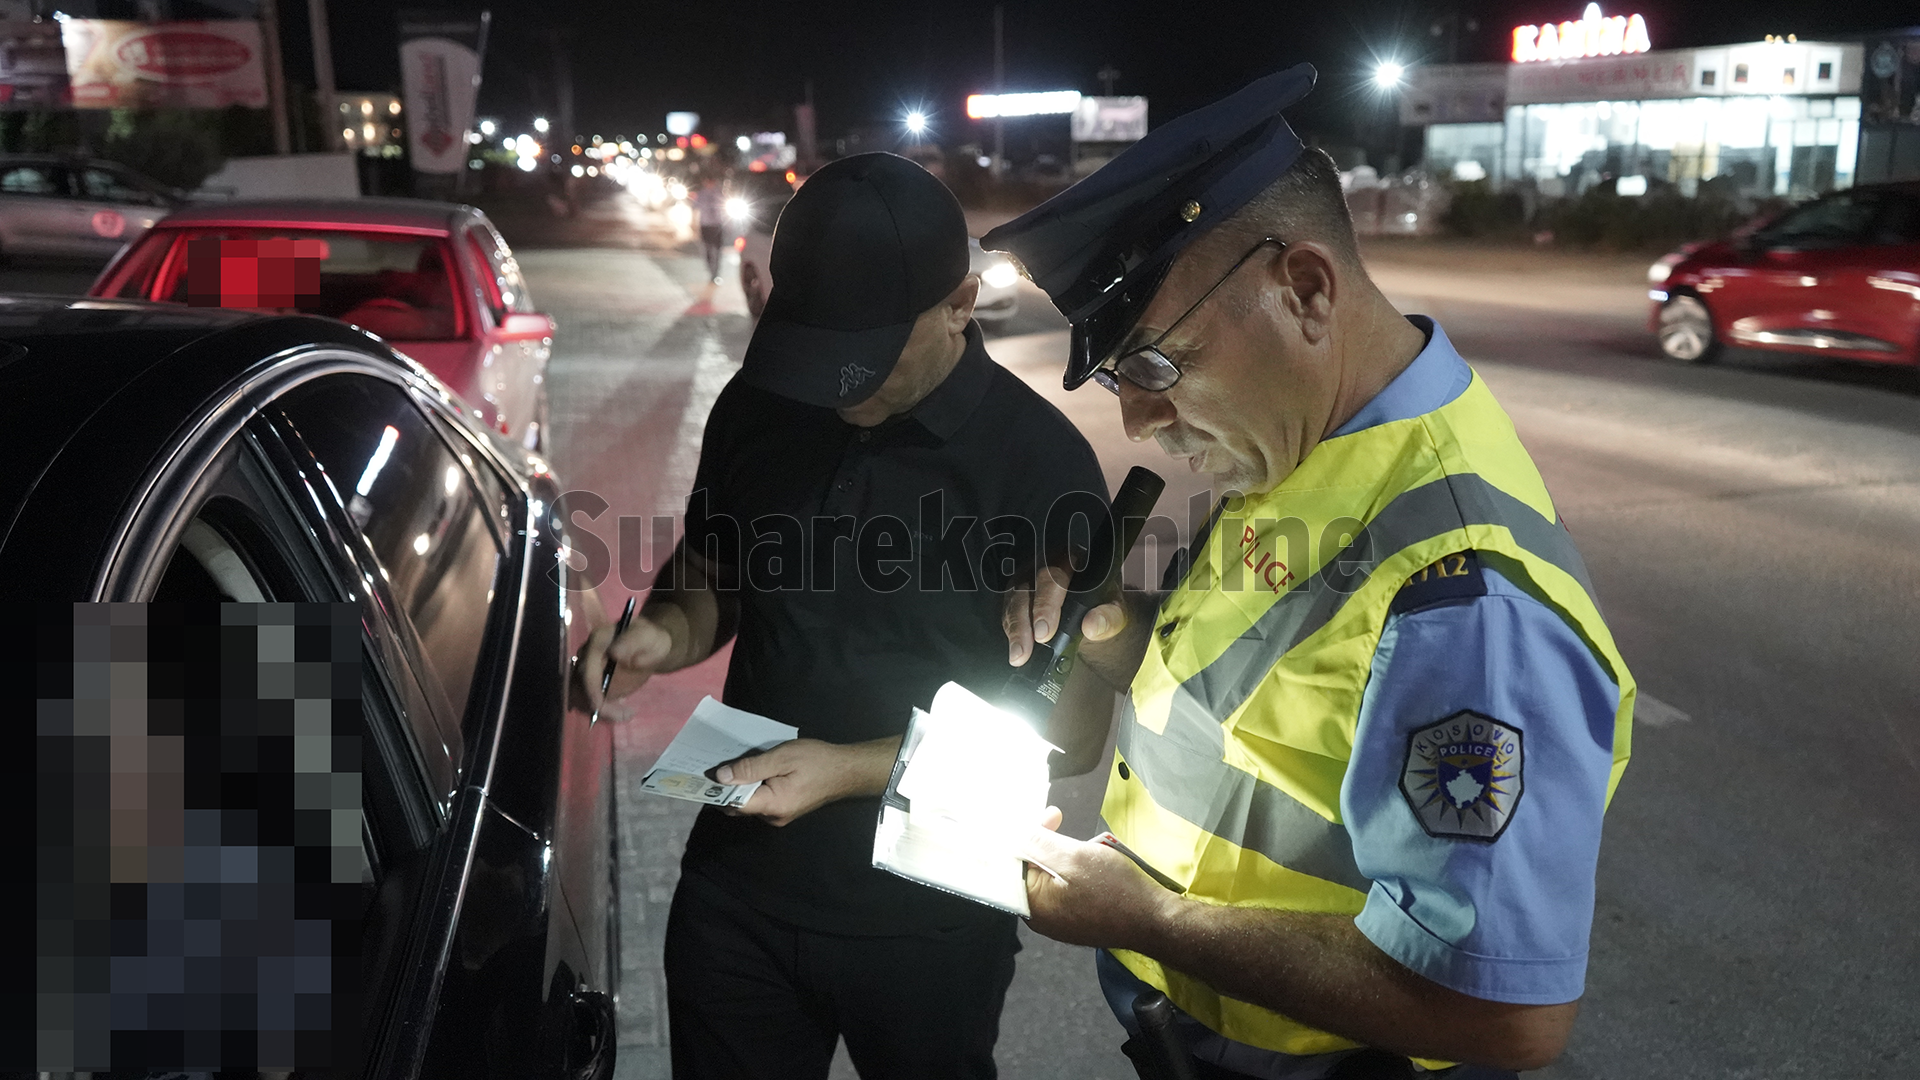 Nga sonte Policia në Suharekë shton aktivitetin e pas mesnatës